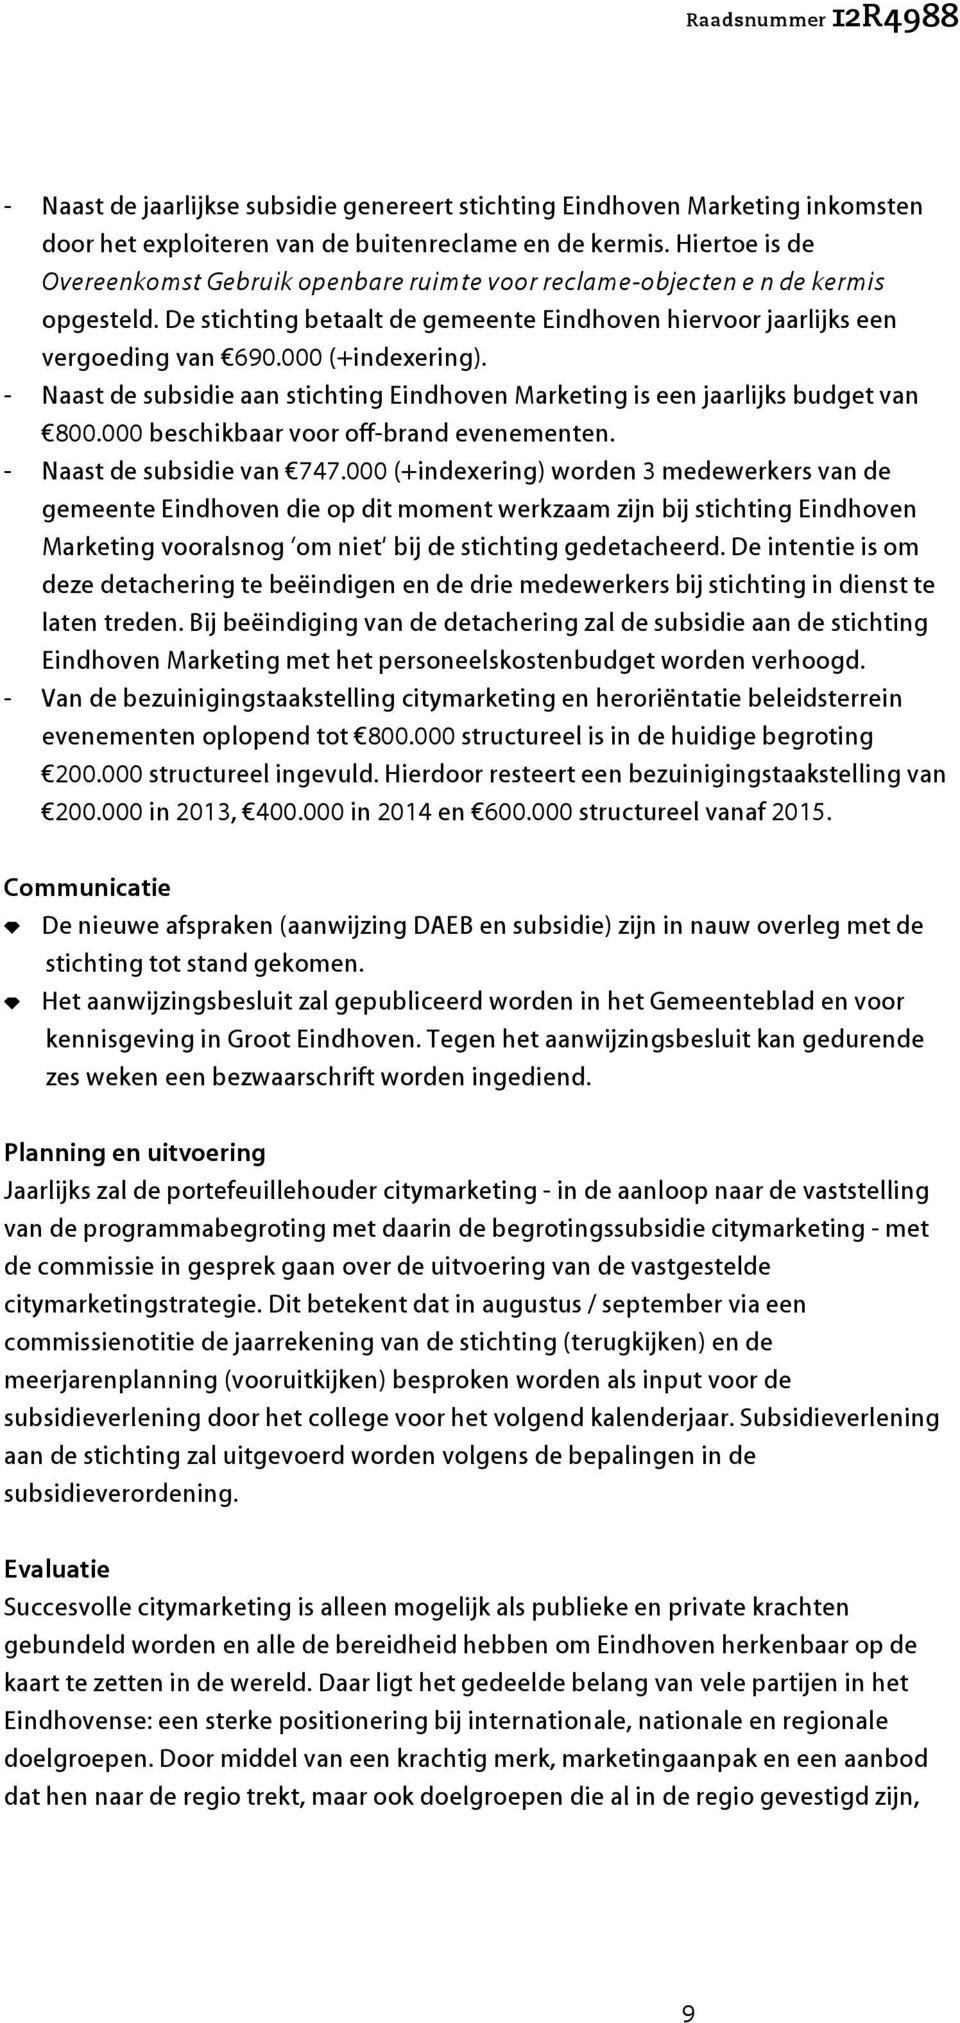 - Naast de subsidie aan stichting Eindhoven Marketing is een jaarlijks budget van 800.000 beschikbaar voor off-brand evenementen. - Naast de subsidie van 747.